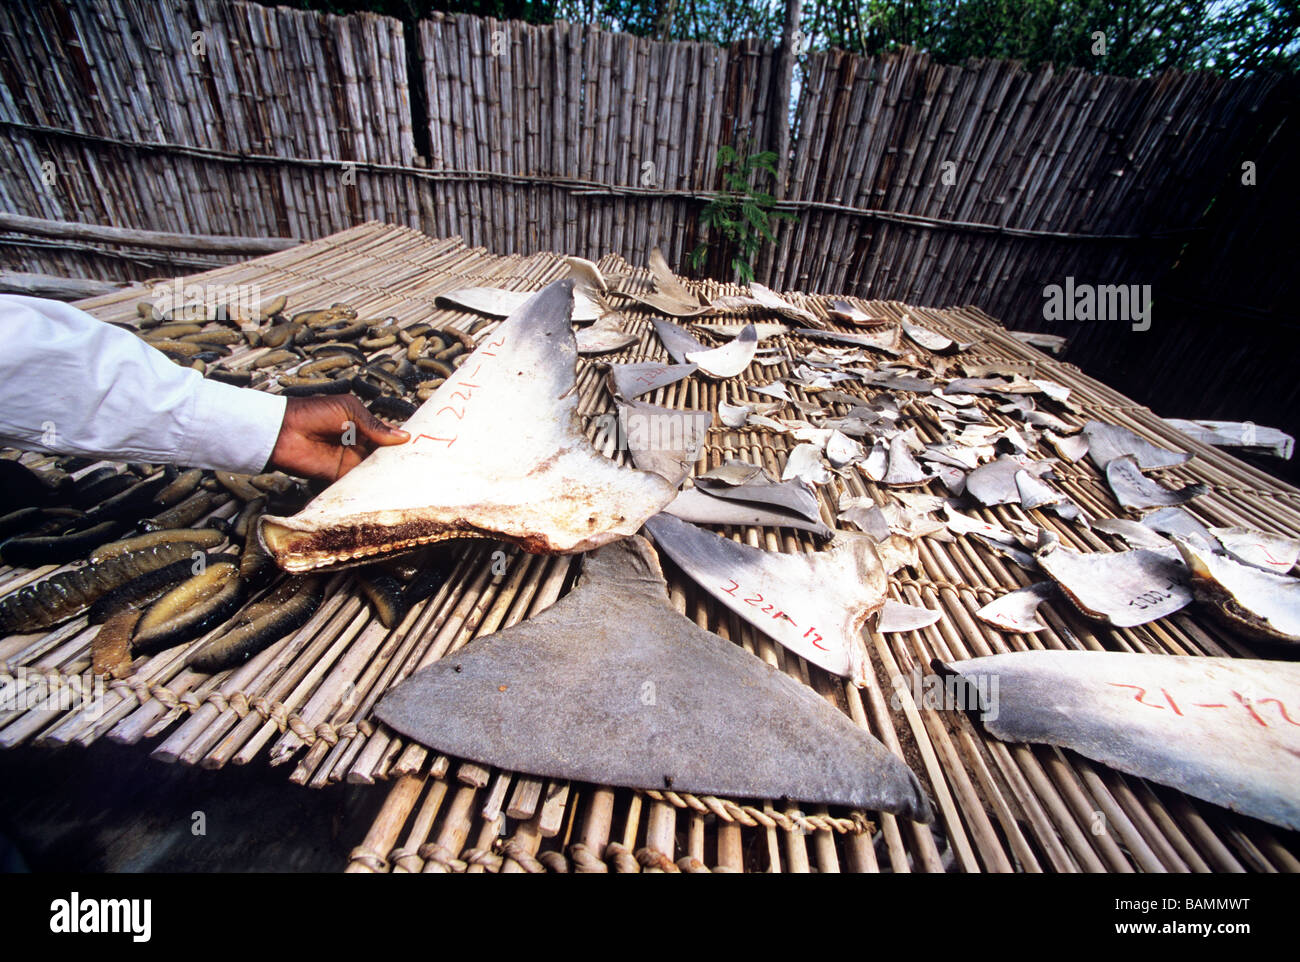 L'aileron de requin chinois concombre de mer concessionnaire avec le Mozambique Mozambique Inhambane acheteur Banque D'Images